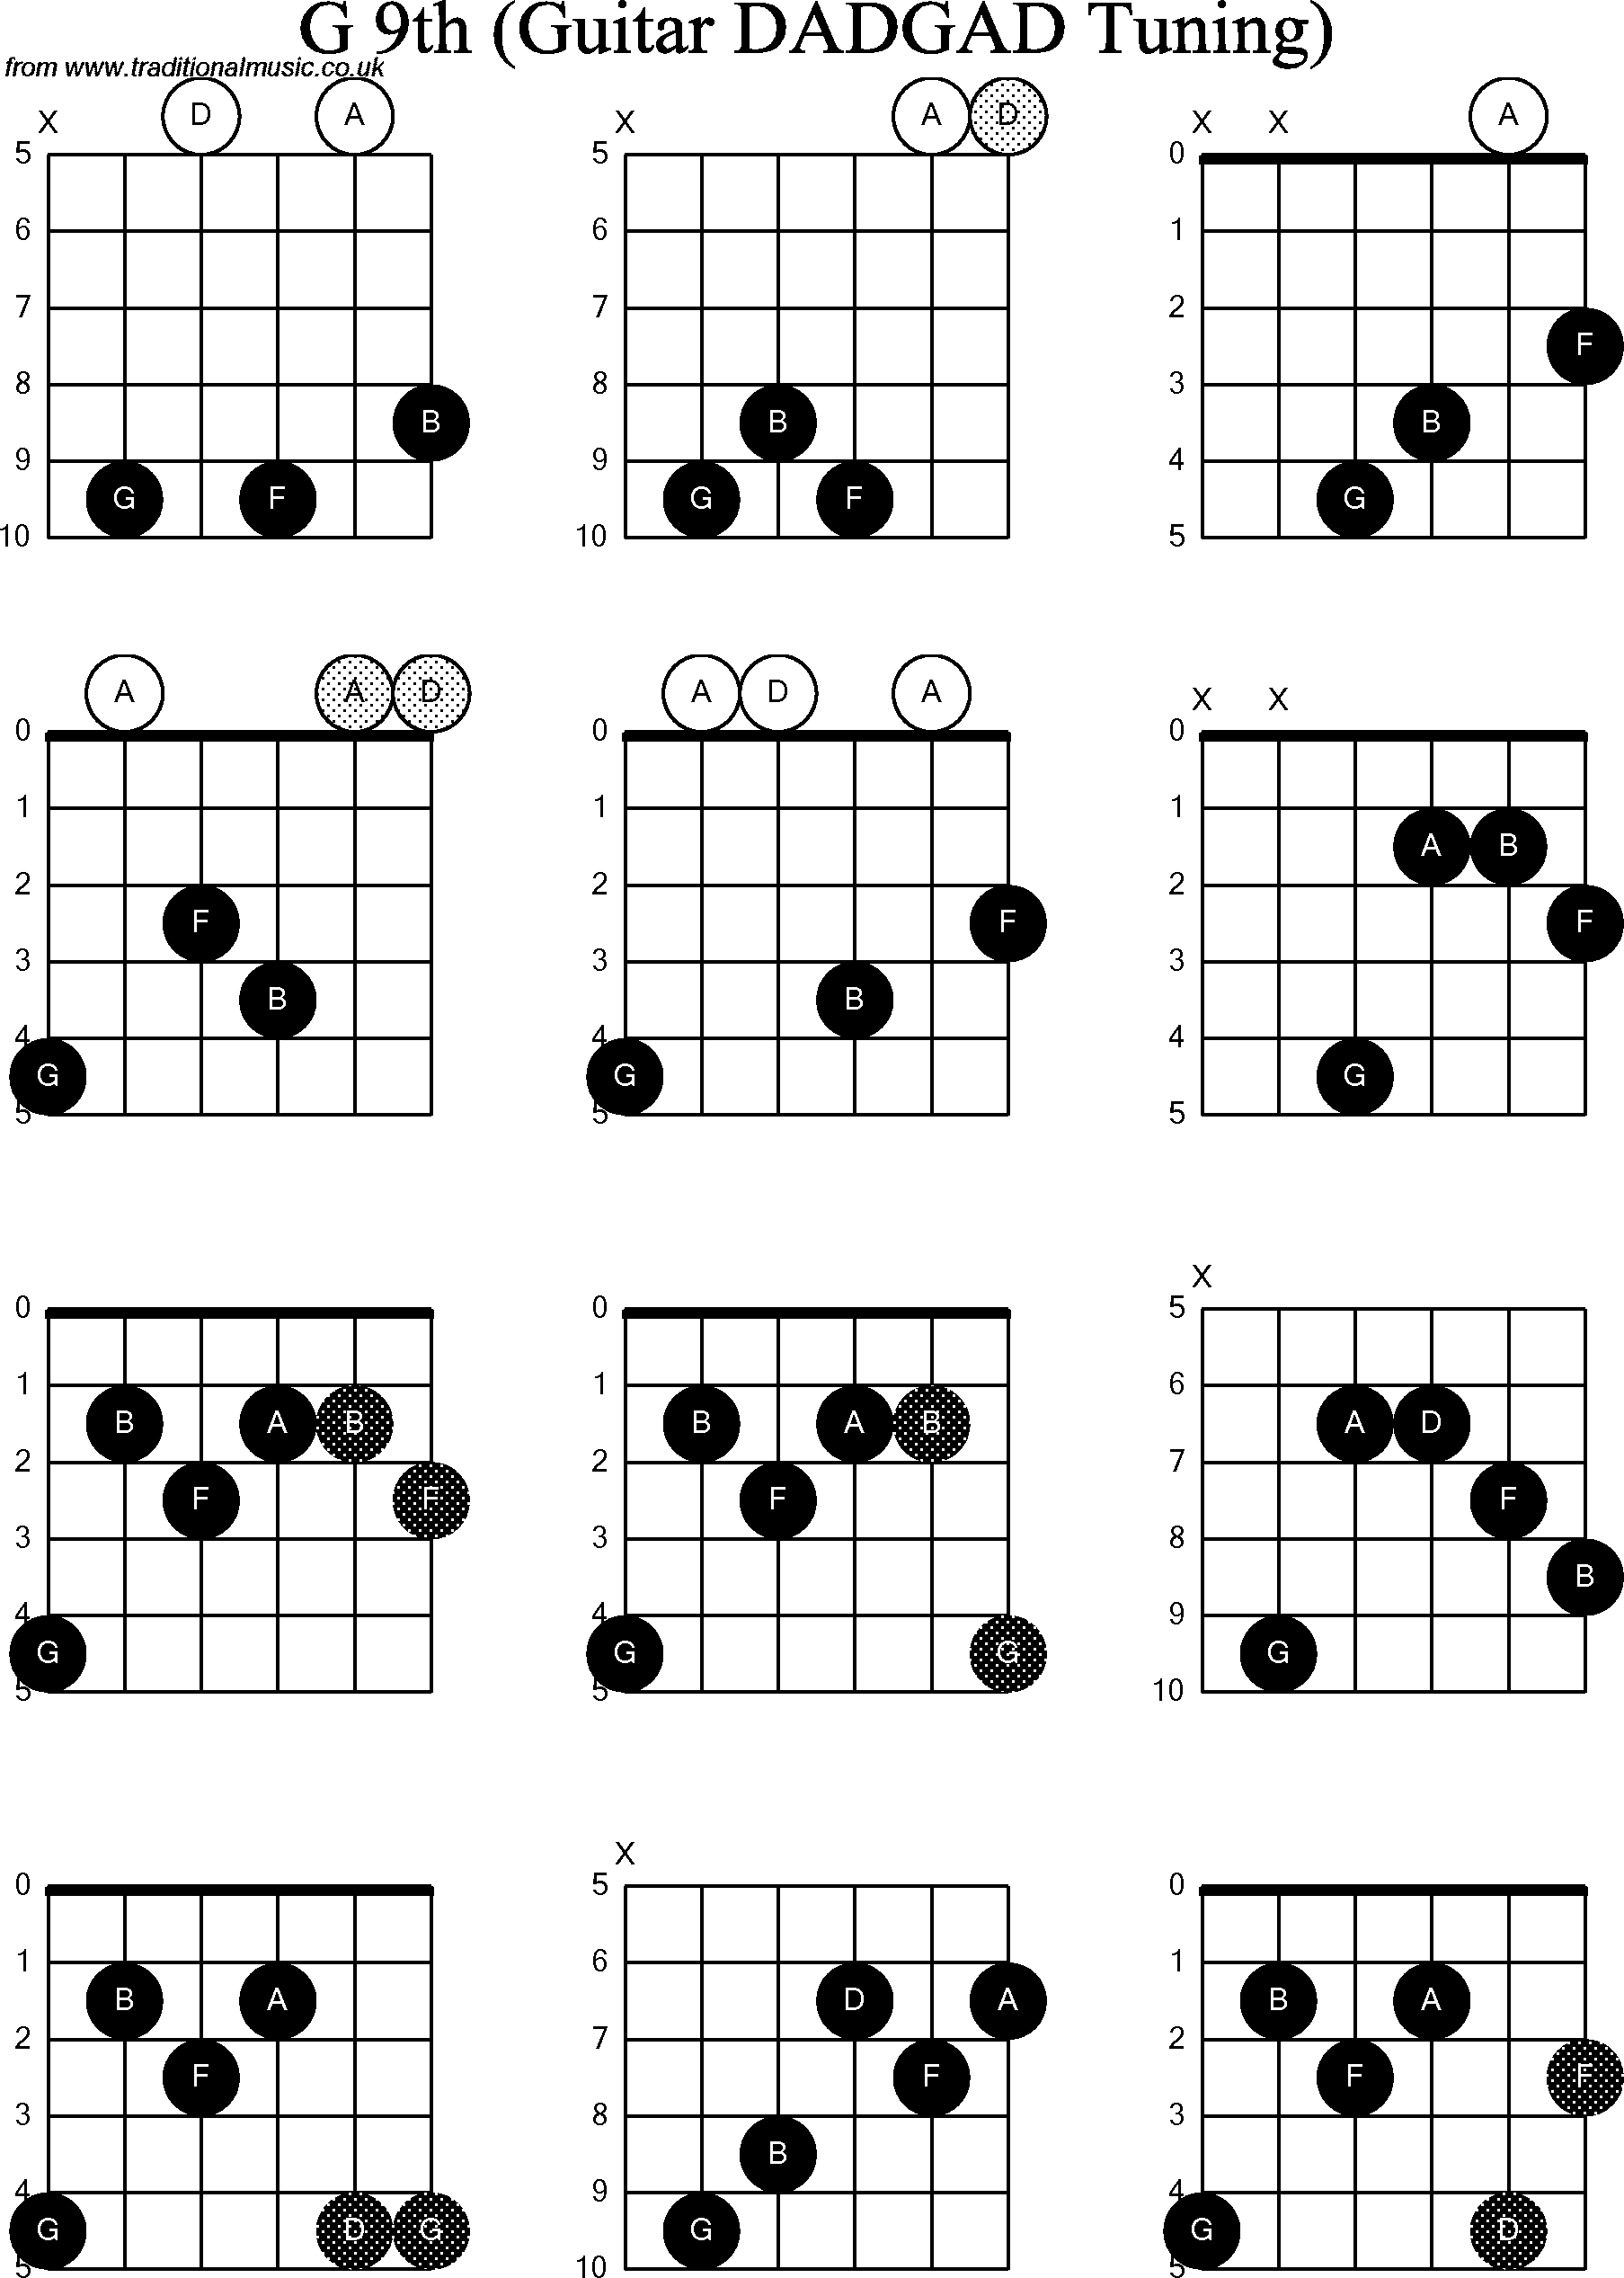 Chord Diagrams for D Modal Guitar(DADGAD) G9th.